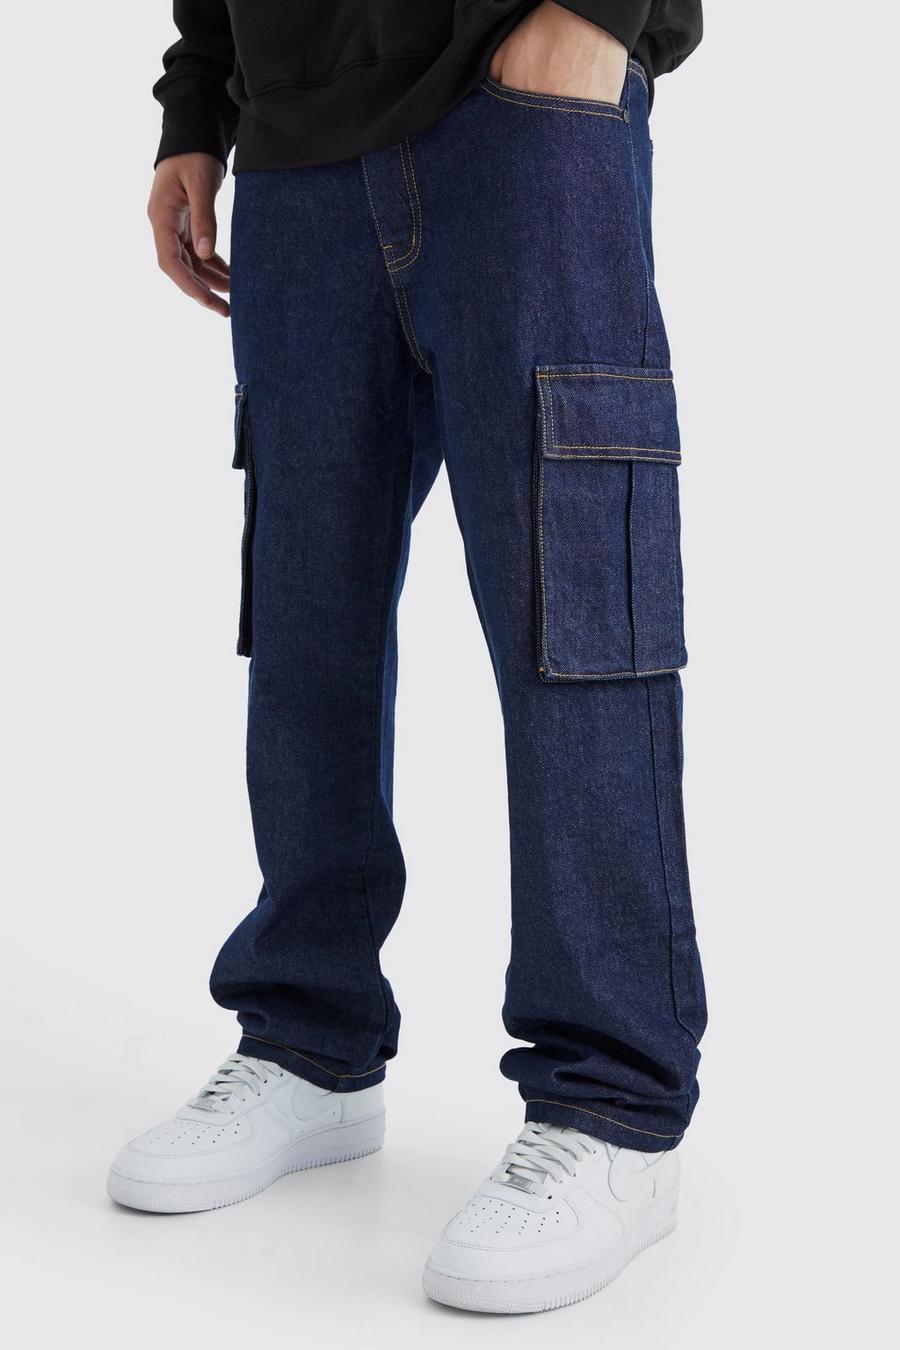 Indigo cotton Rigid Cargo Jeans